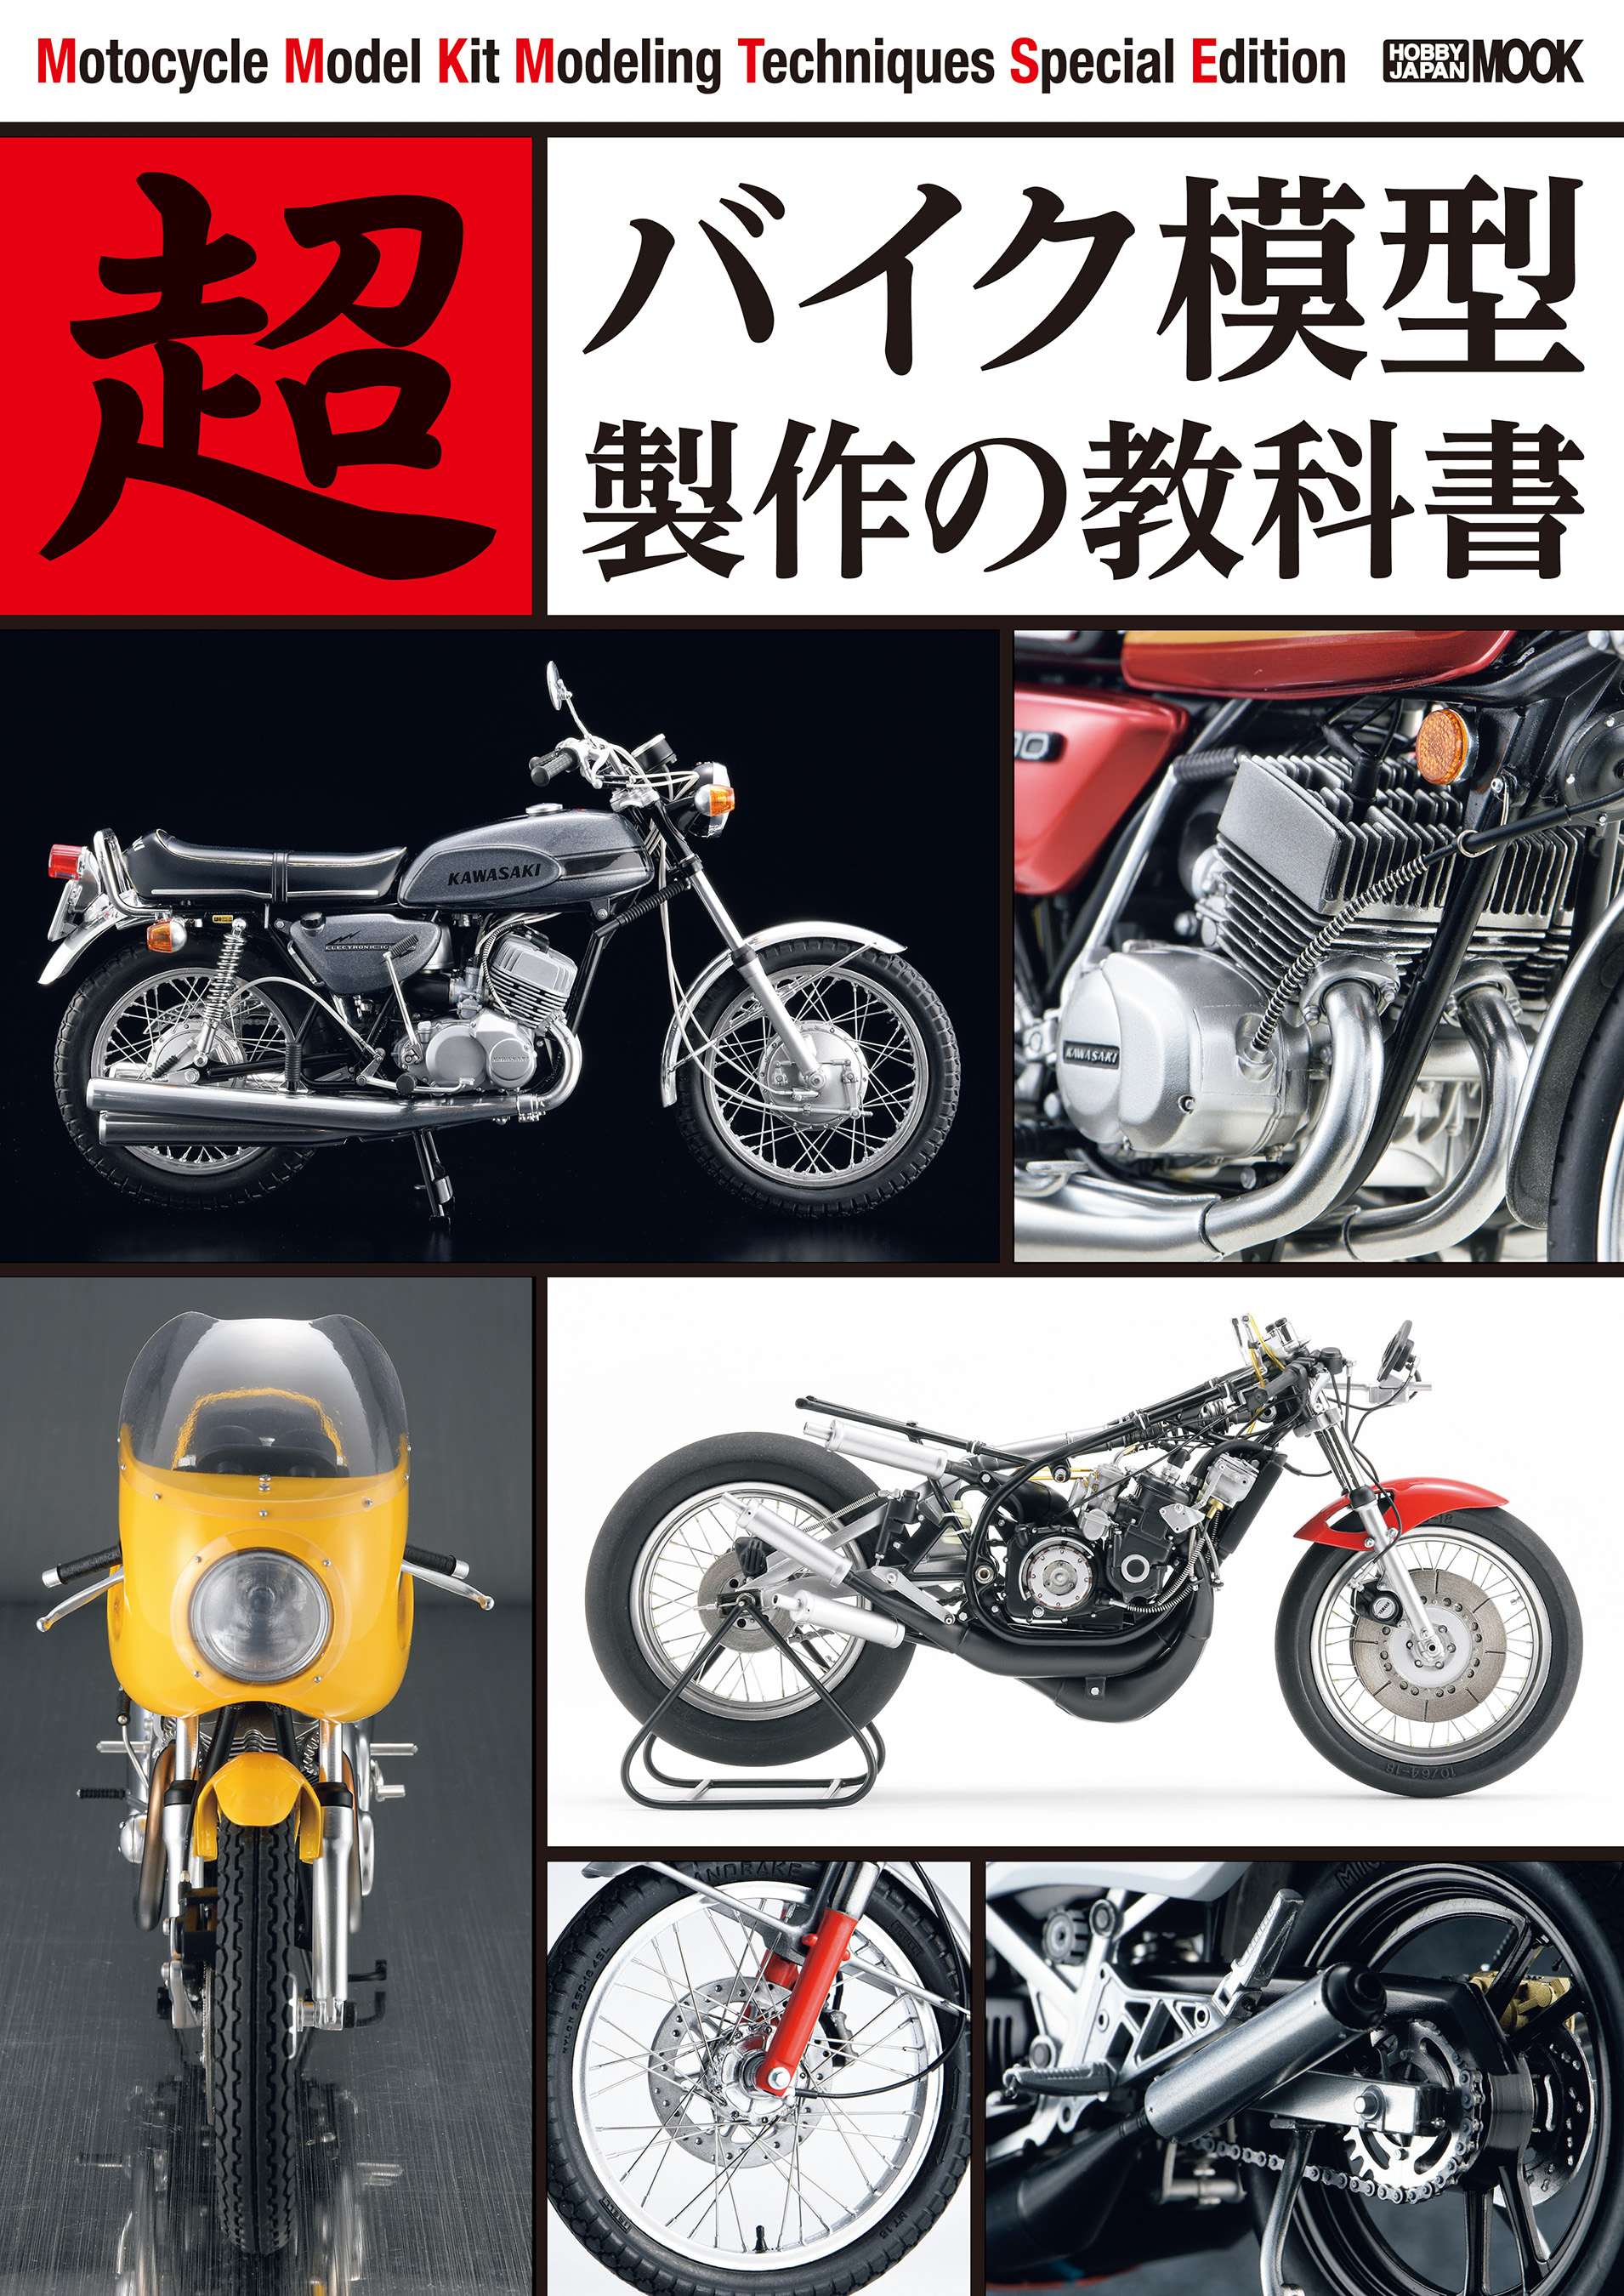 超バイク模型製作の教科書 - ホビージャパン編集部 - 漫画・無料